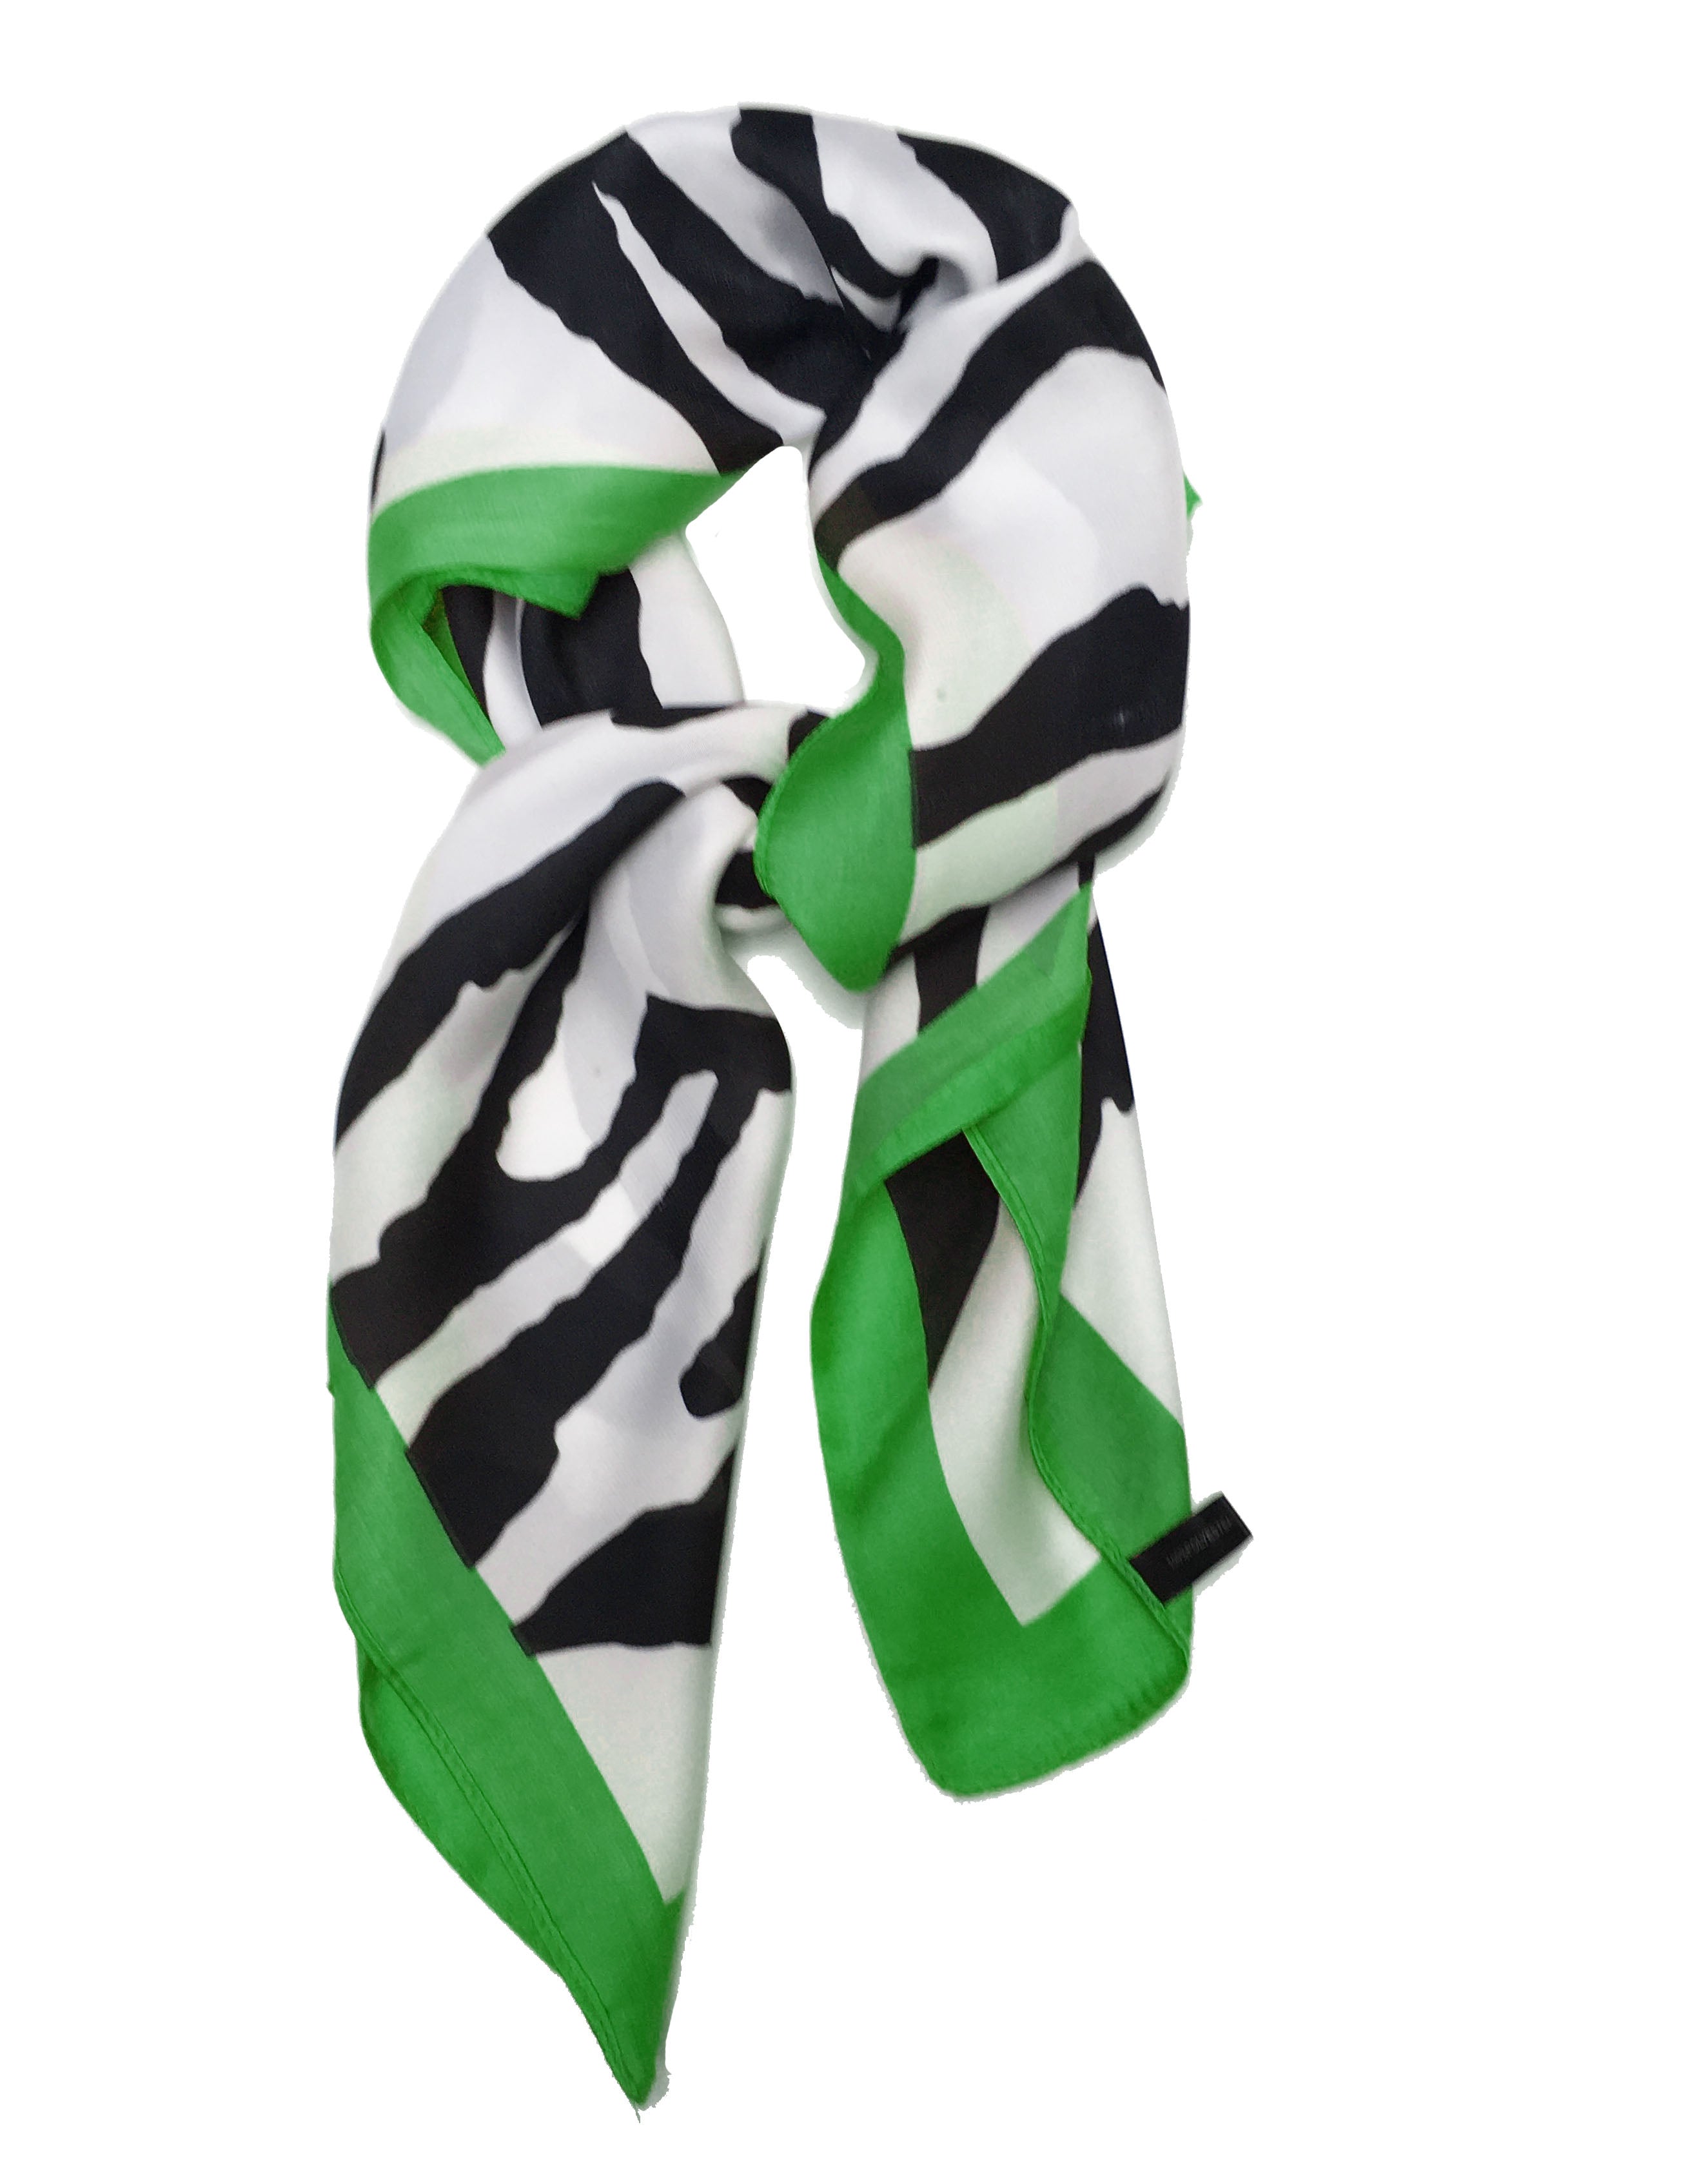 Écharpe carrée 70cm x 70cm, motif imprimé zèbre vert, écharpe fine et soyeuse pour femmes, été printemps